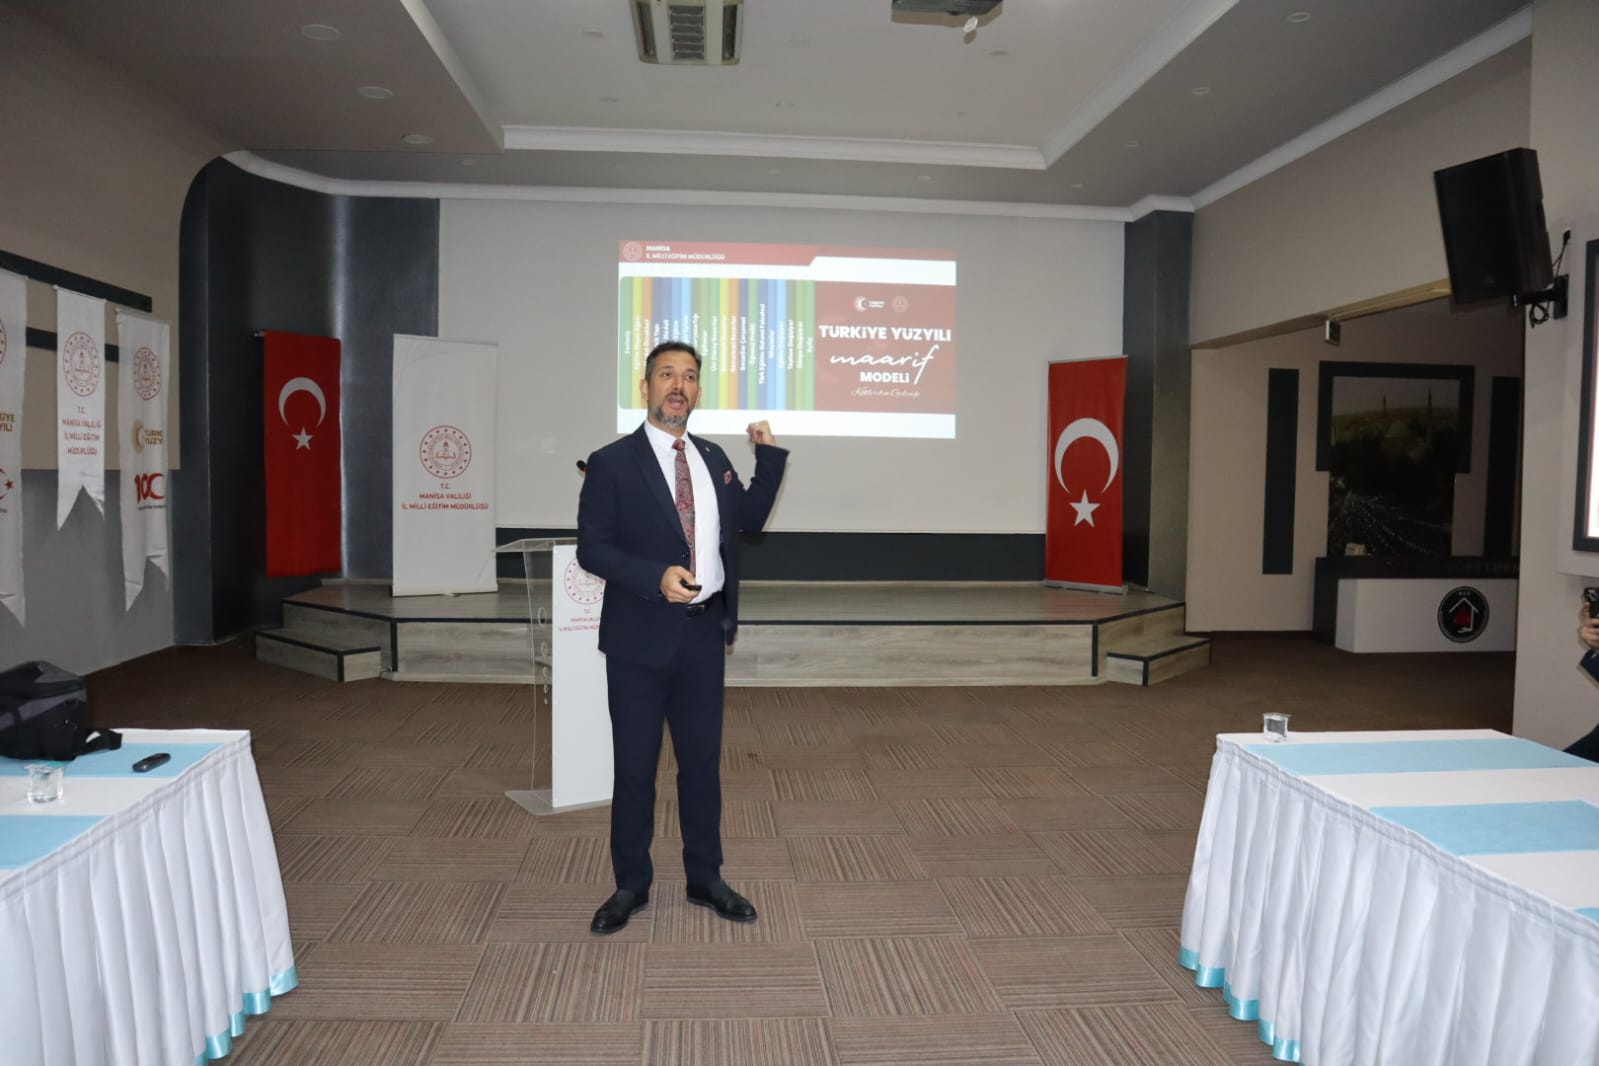 İl Milli Eğitim Müdürü, Türkiye Yüzyılı Maarif Modeli’ni Anlattı (1)